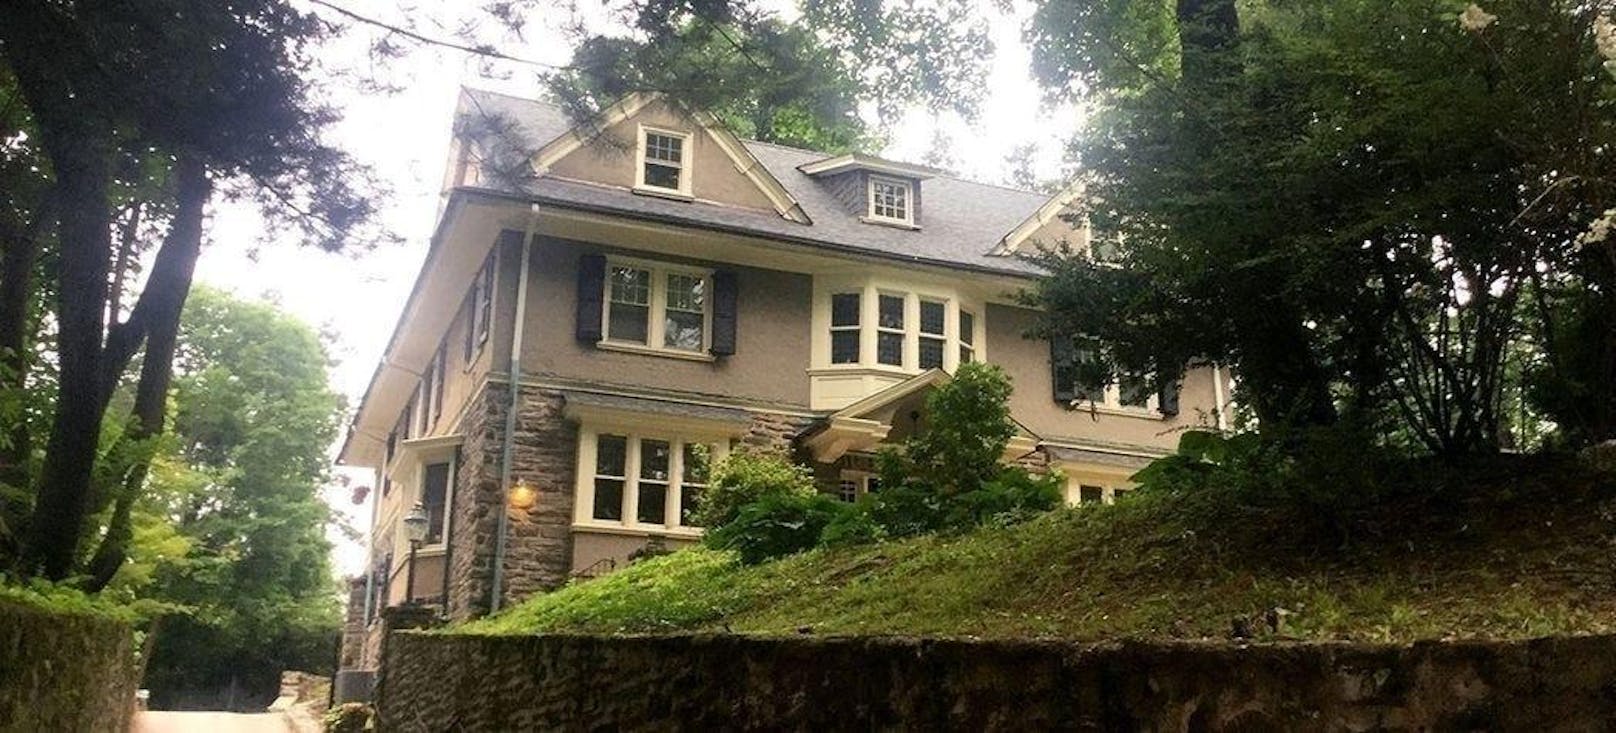 Die Baleroy Mansion in Philadelphia gilt als verwunschen. Grundstein für diesen Ruf legte der Erbauer: Er soll im Alkoholrausch seine Frau und seine Mutter getötet haben.